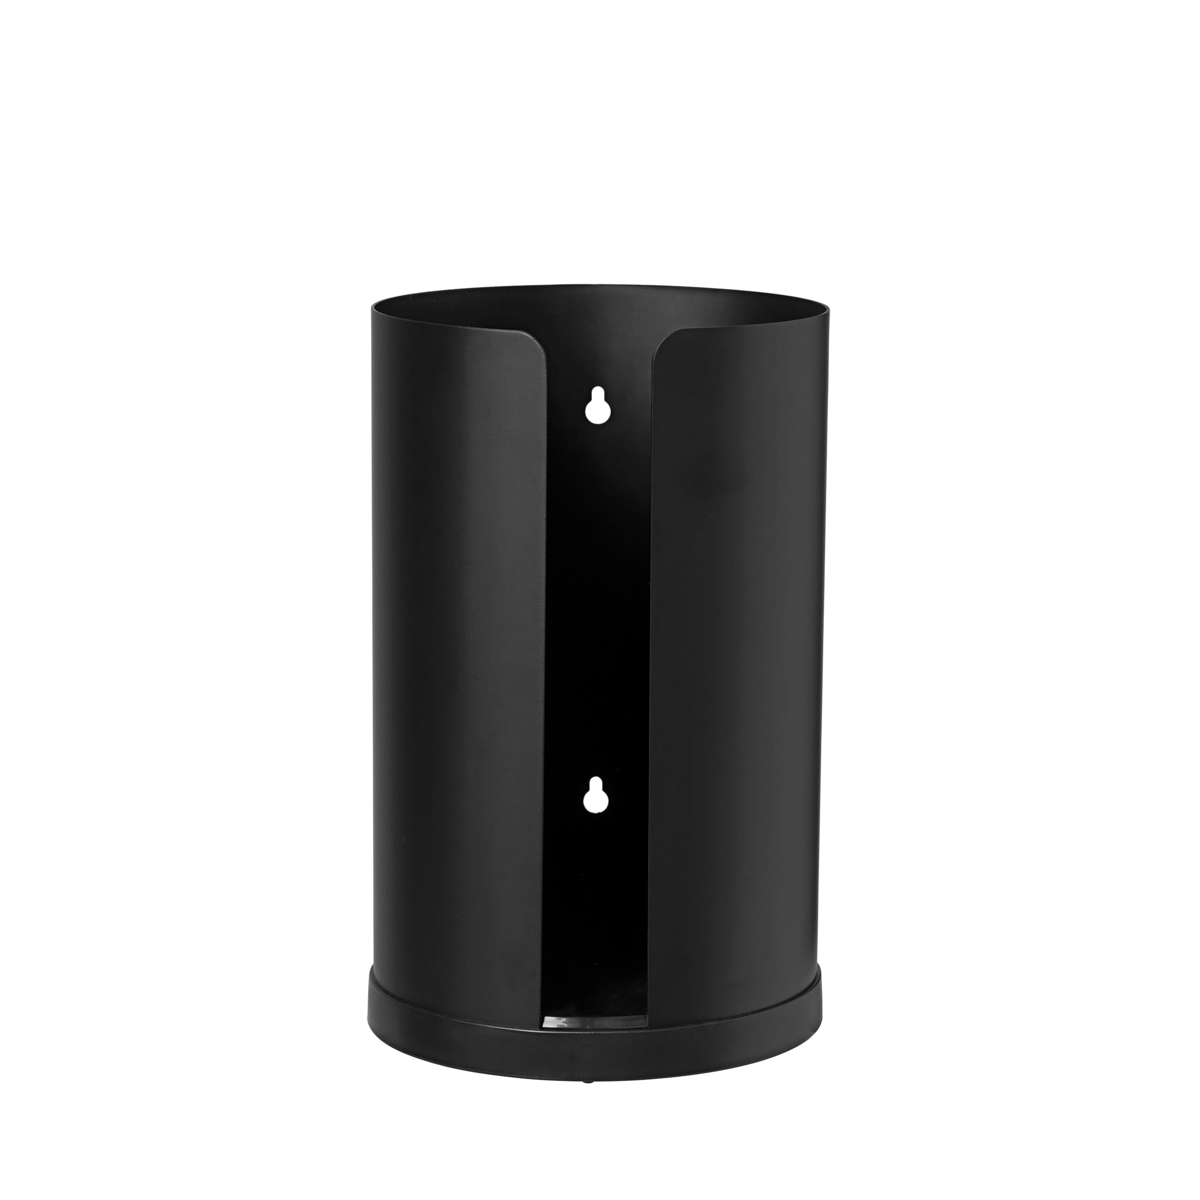 WC-Rollenhalter -NEXIO- Black Size S, Ø 13,5 cm. Material: Stahl pulverbeschichtet, Kunststoff. Von Blomus.